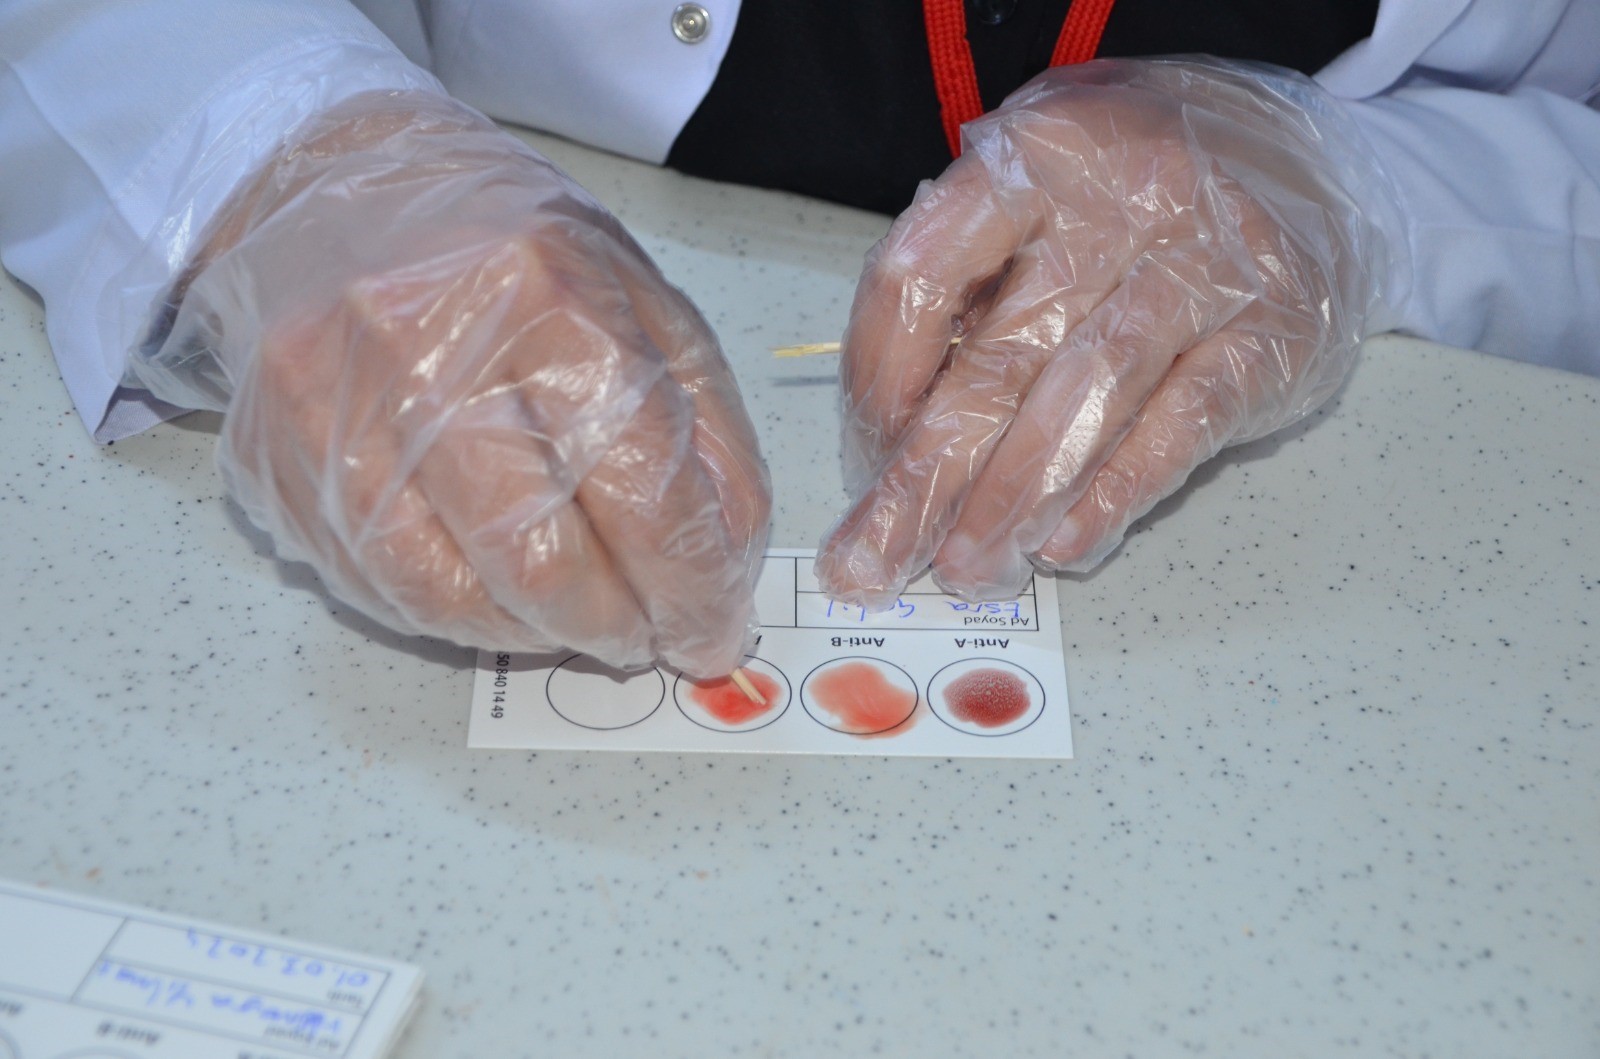 Muş'ta kimya öğretmeni yaptığı çalışmayla 3 saniyede kan grubunu tespit ediyor